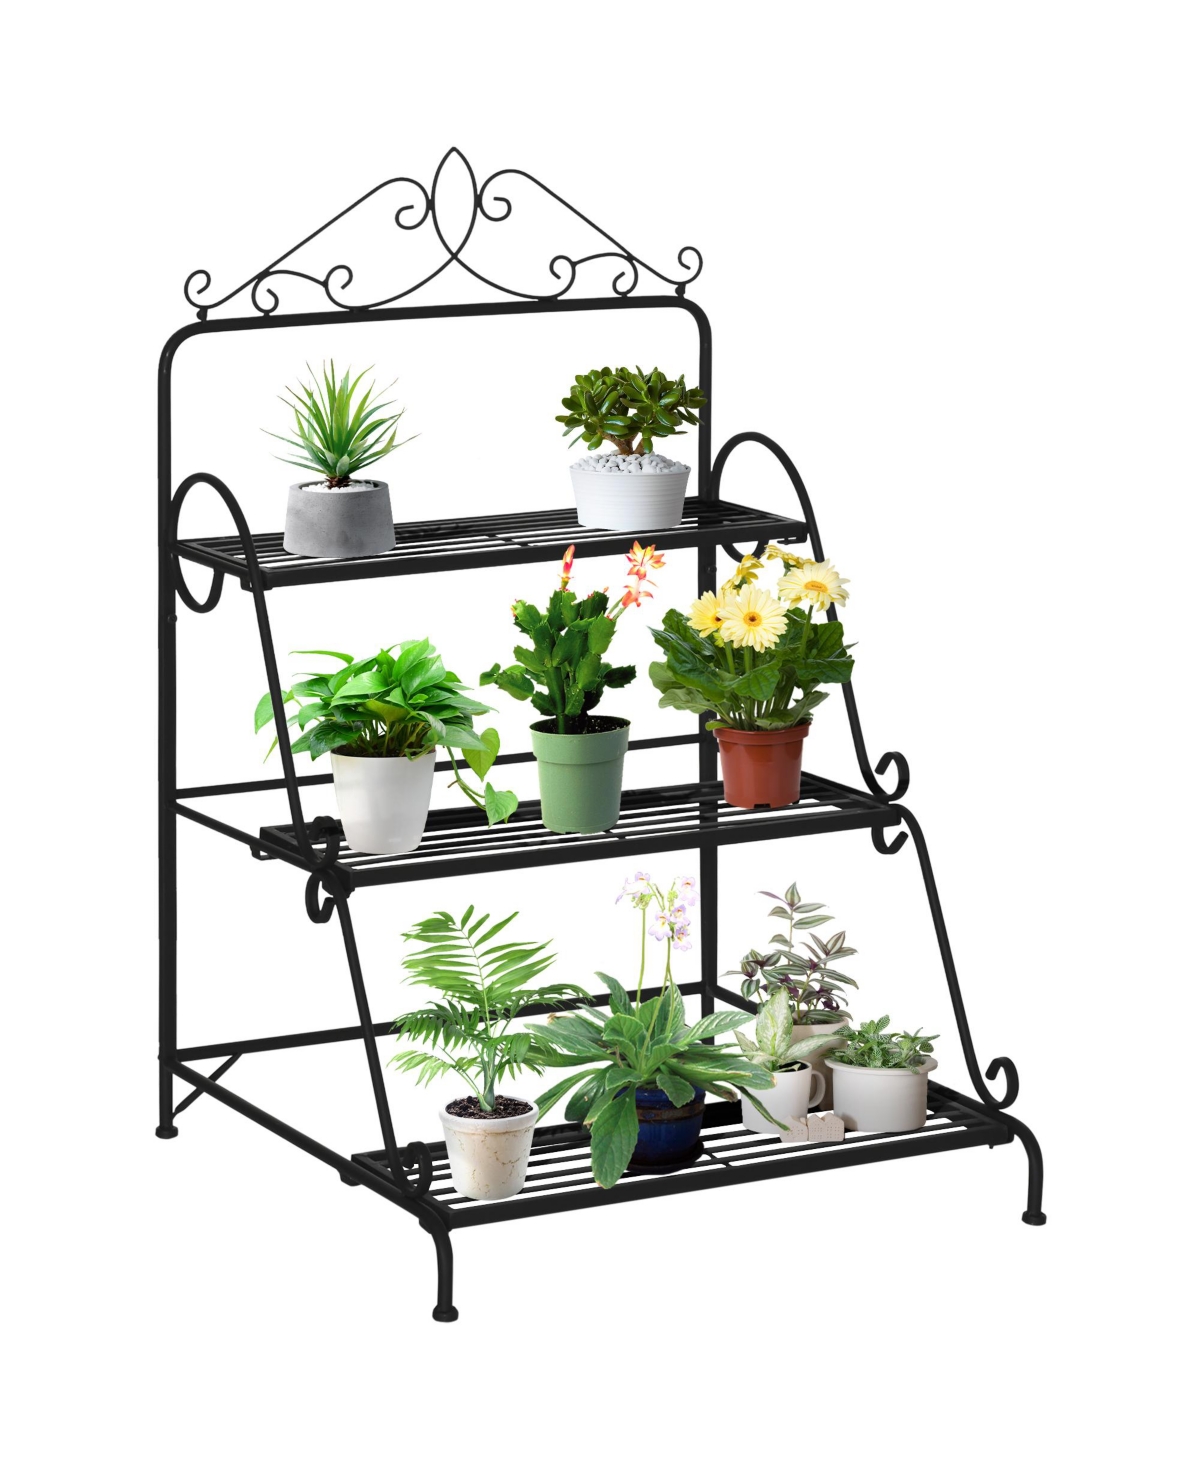 3 Tier Metal Plant Stand Ladder Flower Pot Rack Shelf Indoor & Outdoor - Black